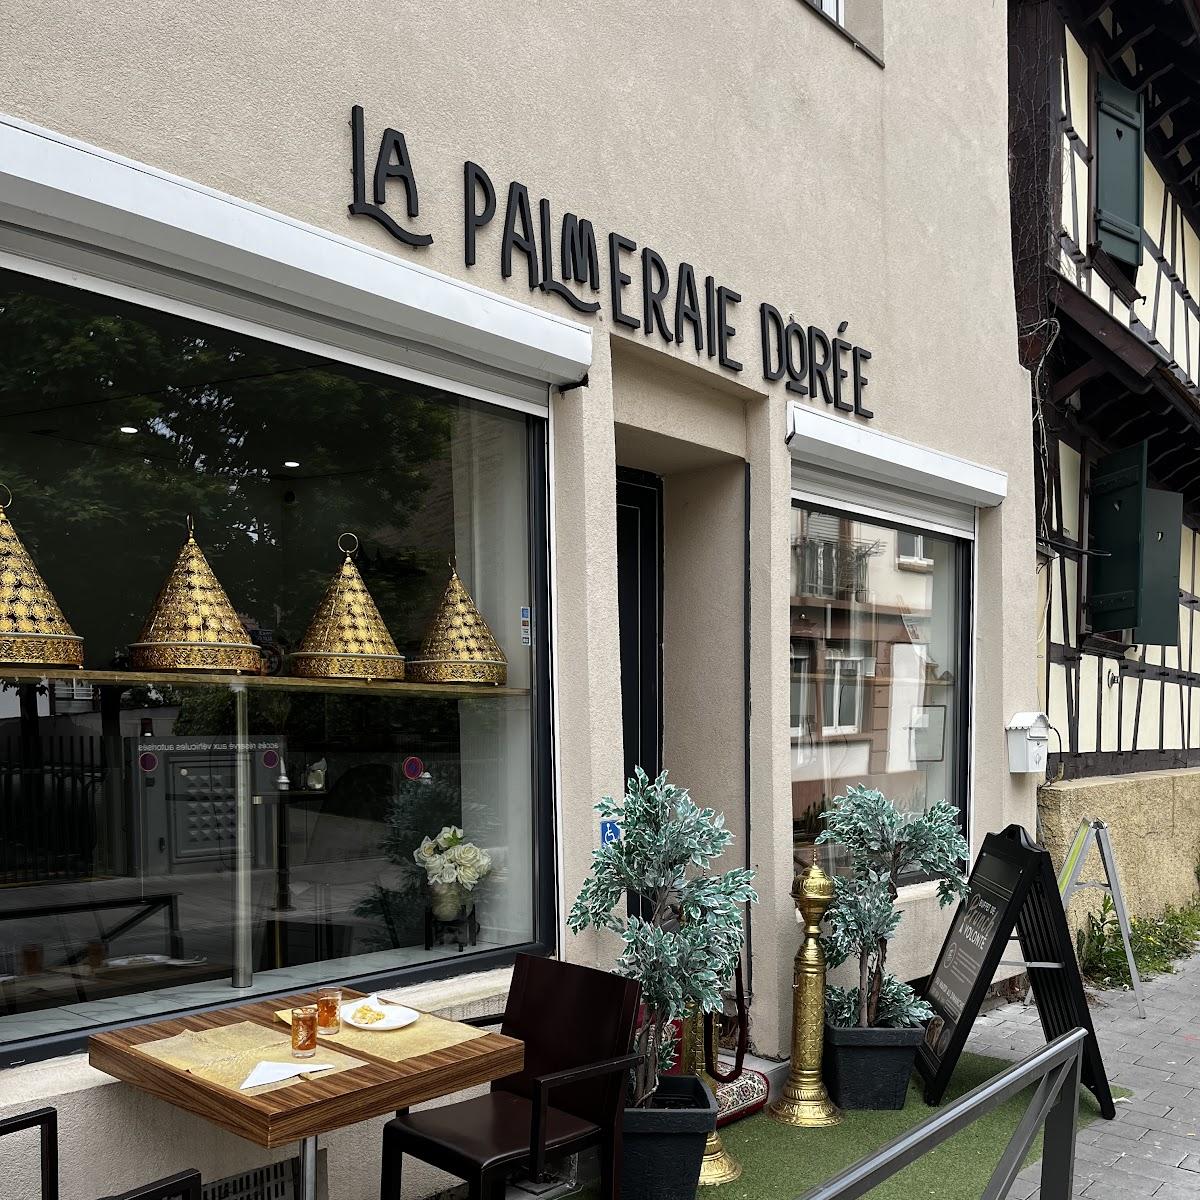 Restaurant "La Palmeraie dorée" in Bischheim